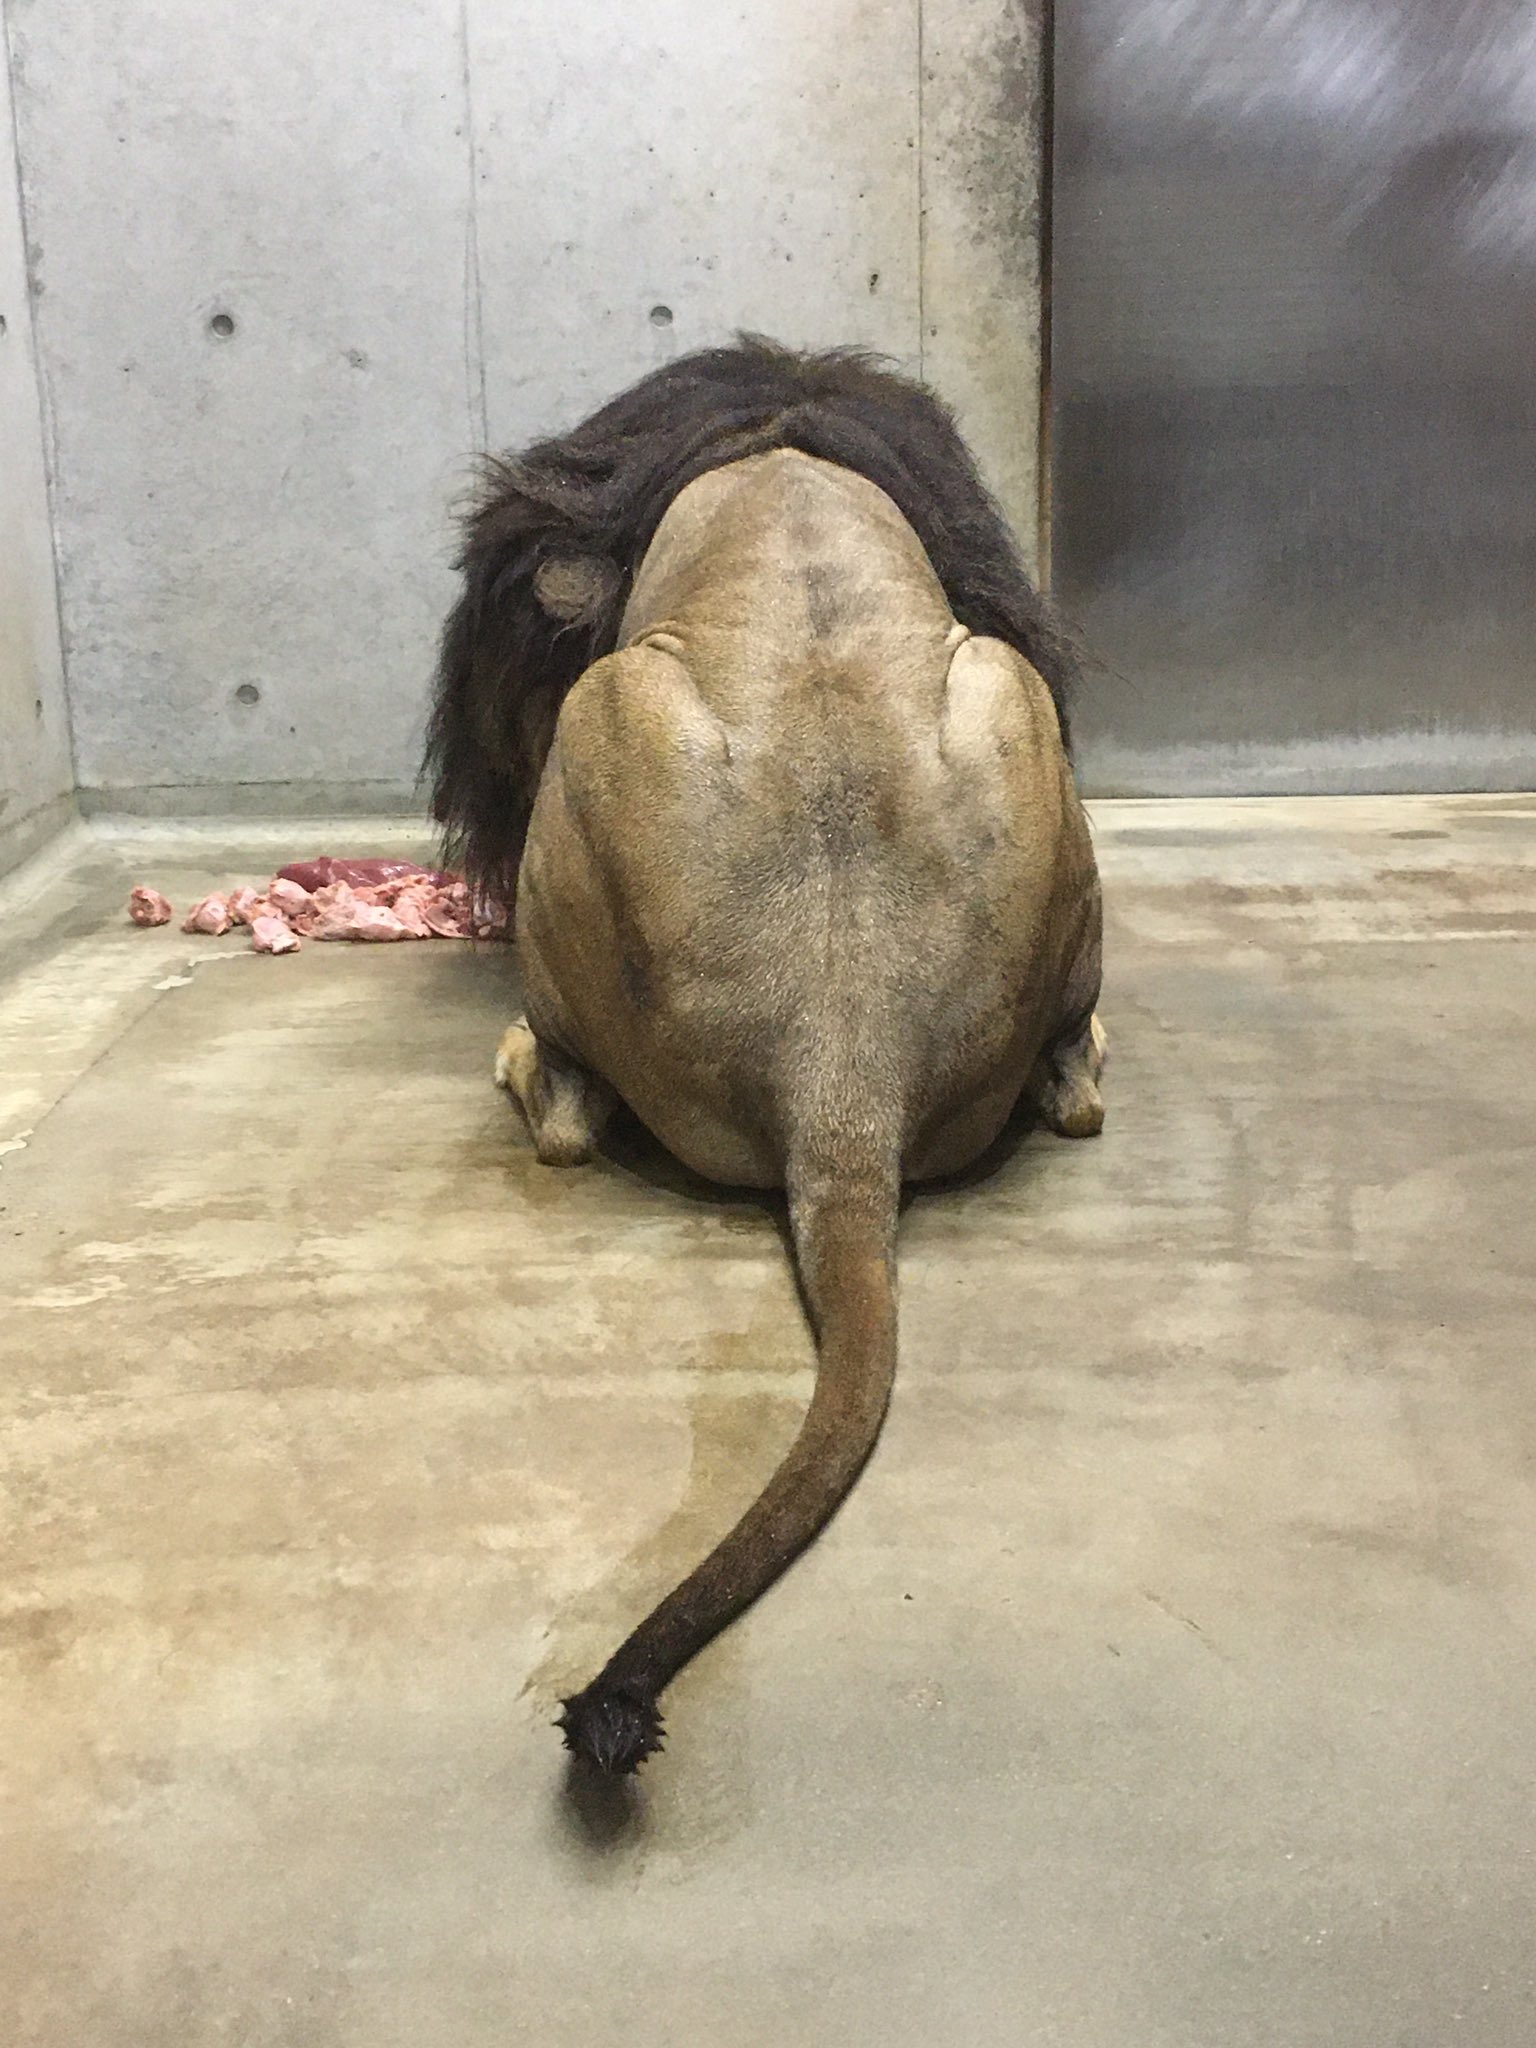 千葉市動物公園 公式 ライオン アレン の後ろ姿 伸びてきたら飼育担当者がバリカンで刈っている って思っている方いませんか 無理ですっ 飼二 Chibazoo 休園中の動物園水族館 T Co Ejc1seyutb Twitter